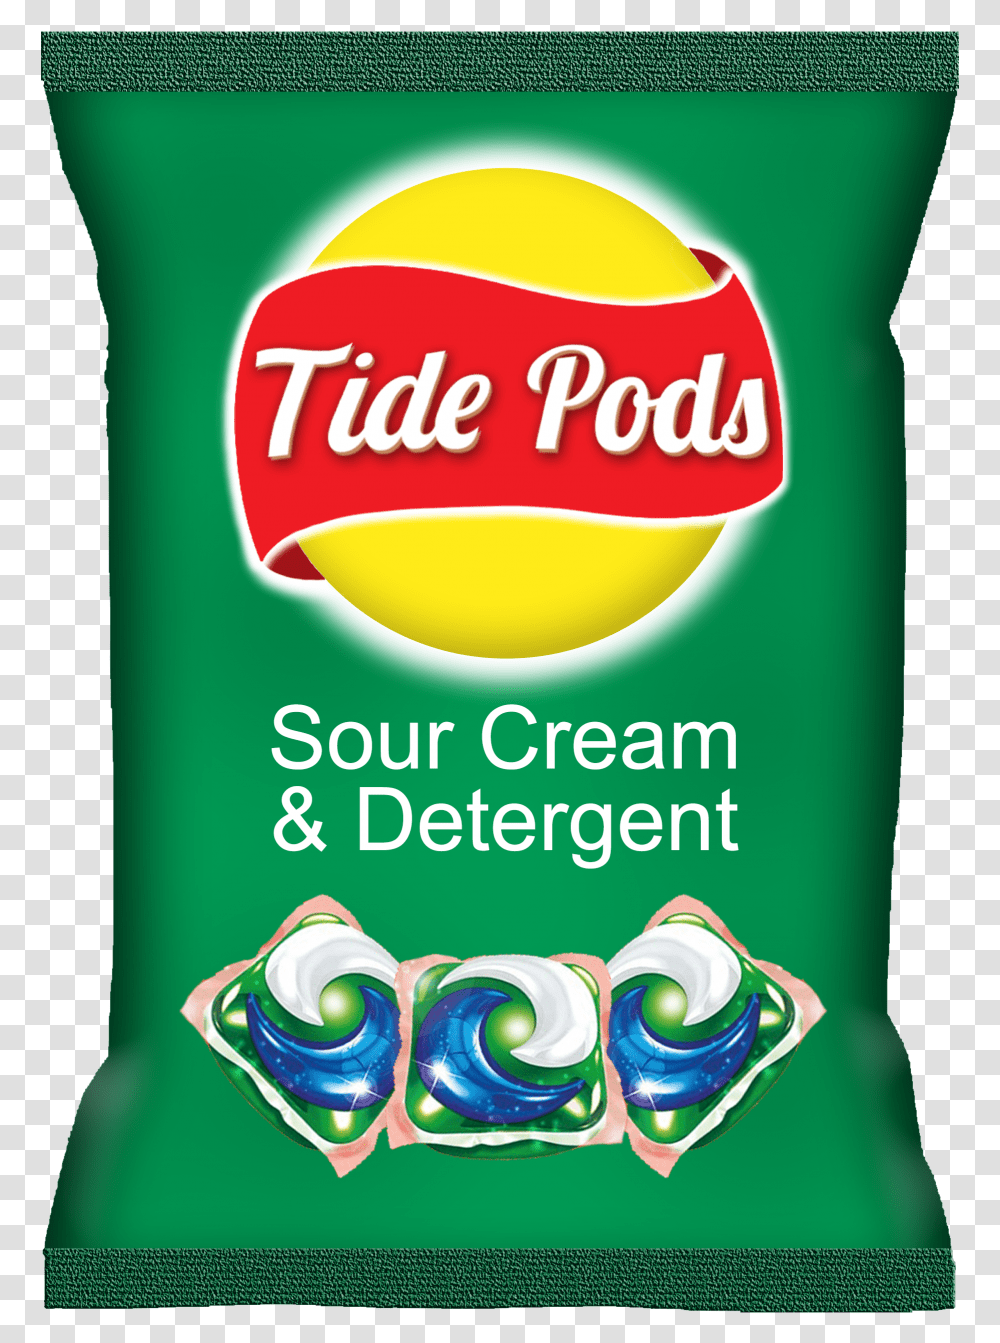 Tide Pods In Food, Bottle, Plant, Label Transparent Png